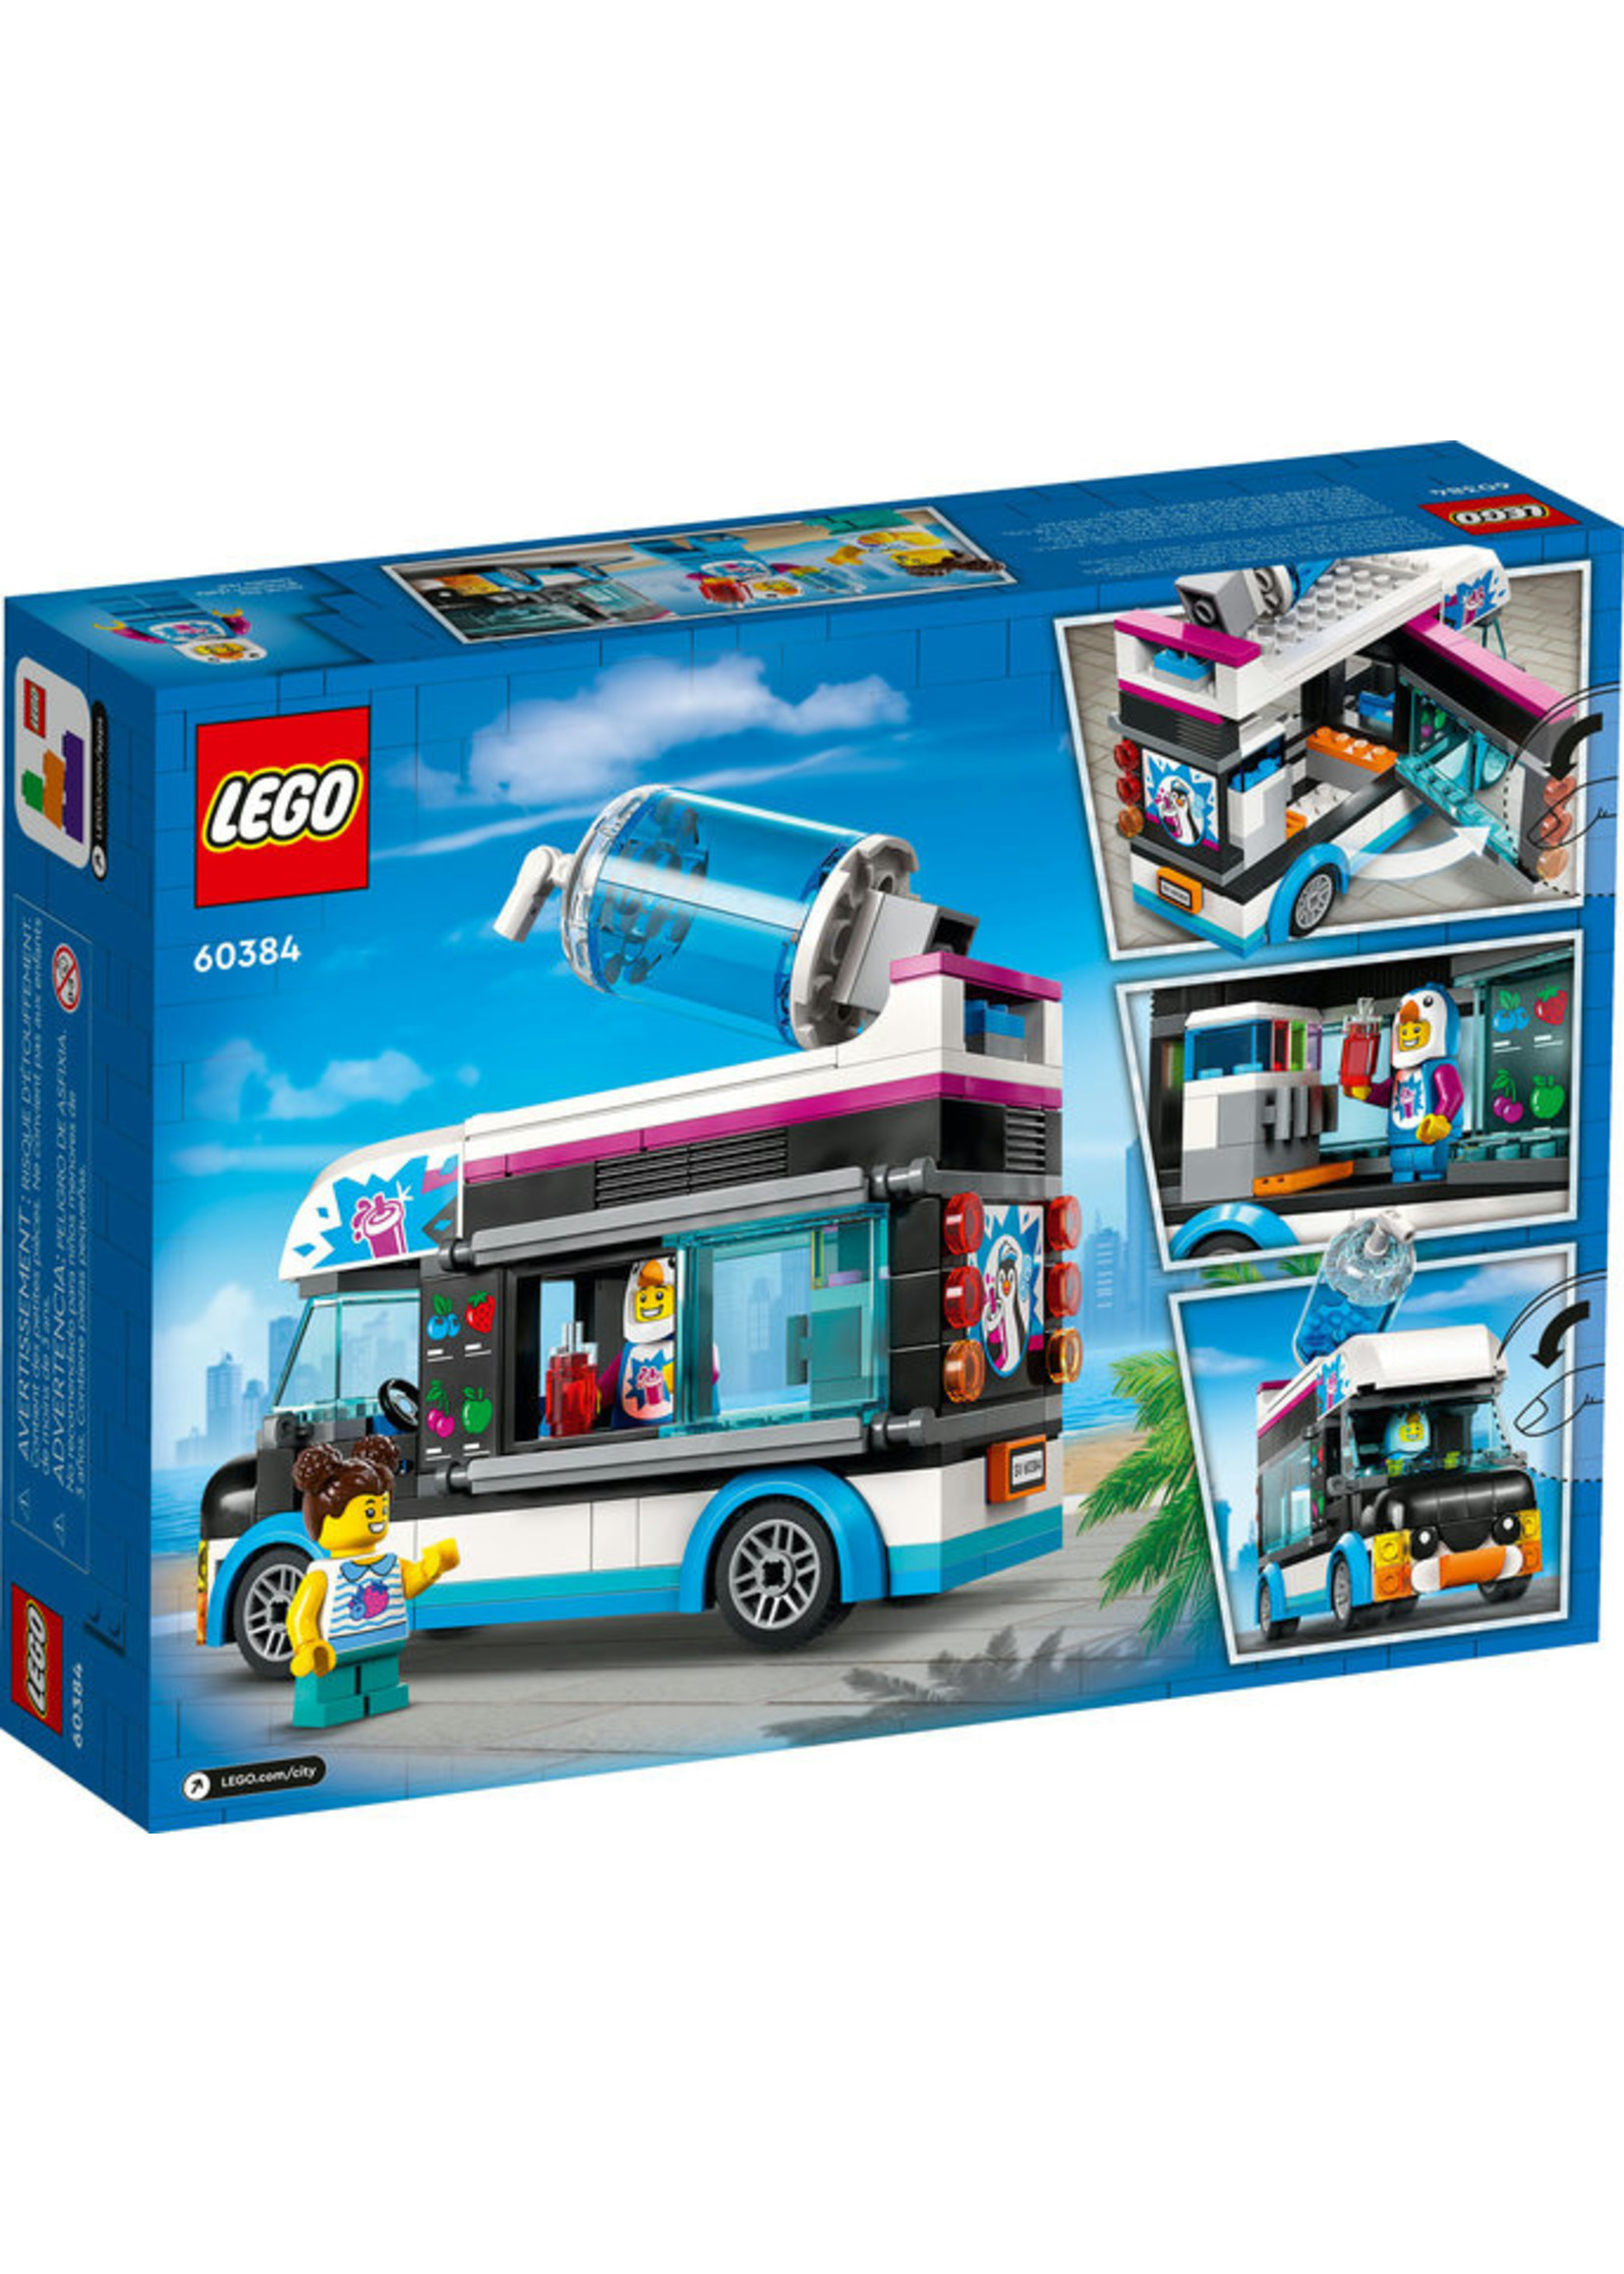 LEGO 60384 - Penguin Slushy Truck